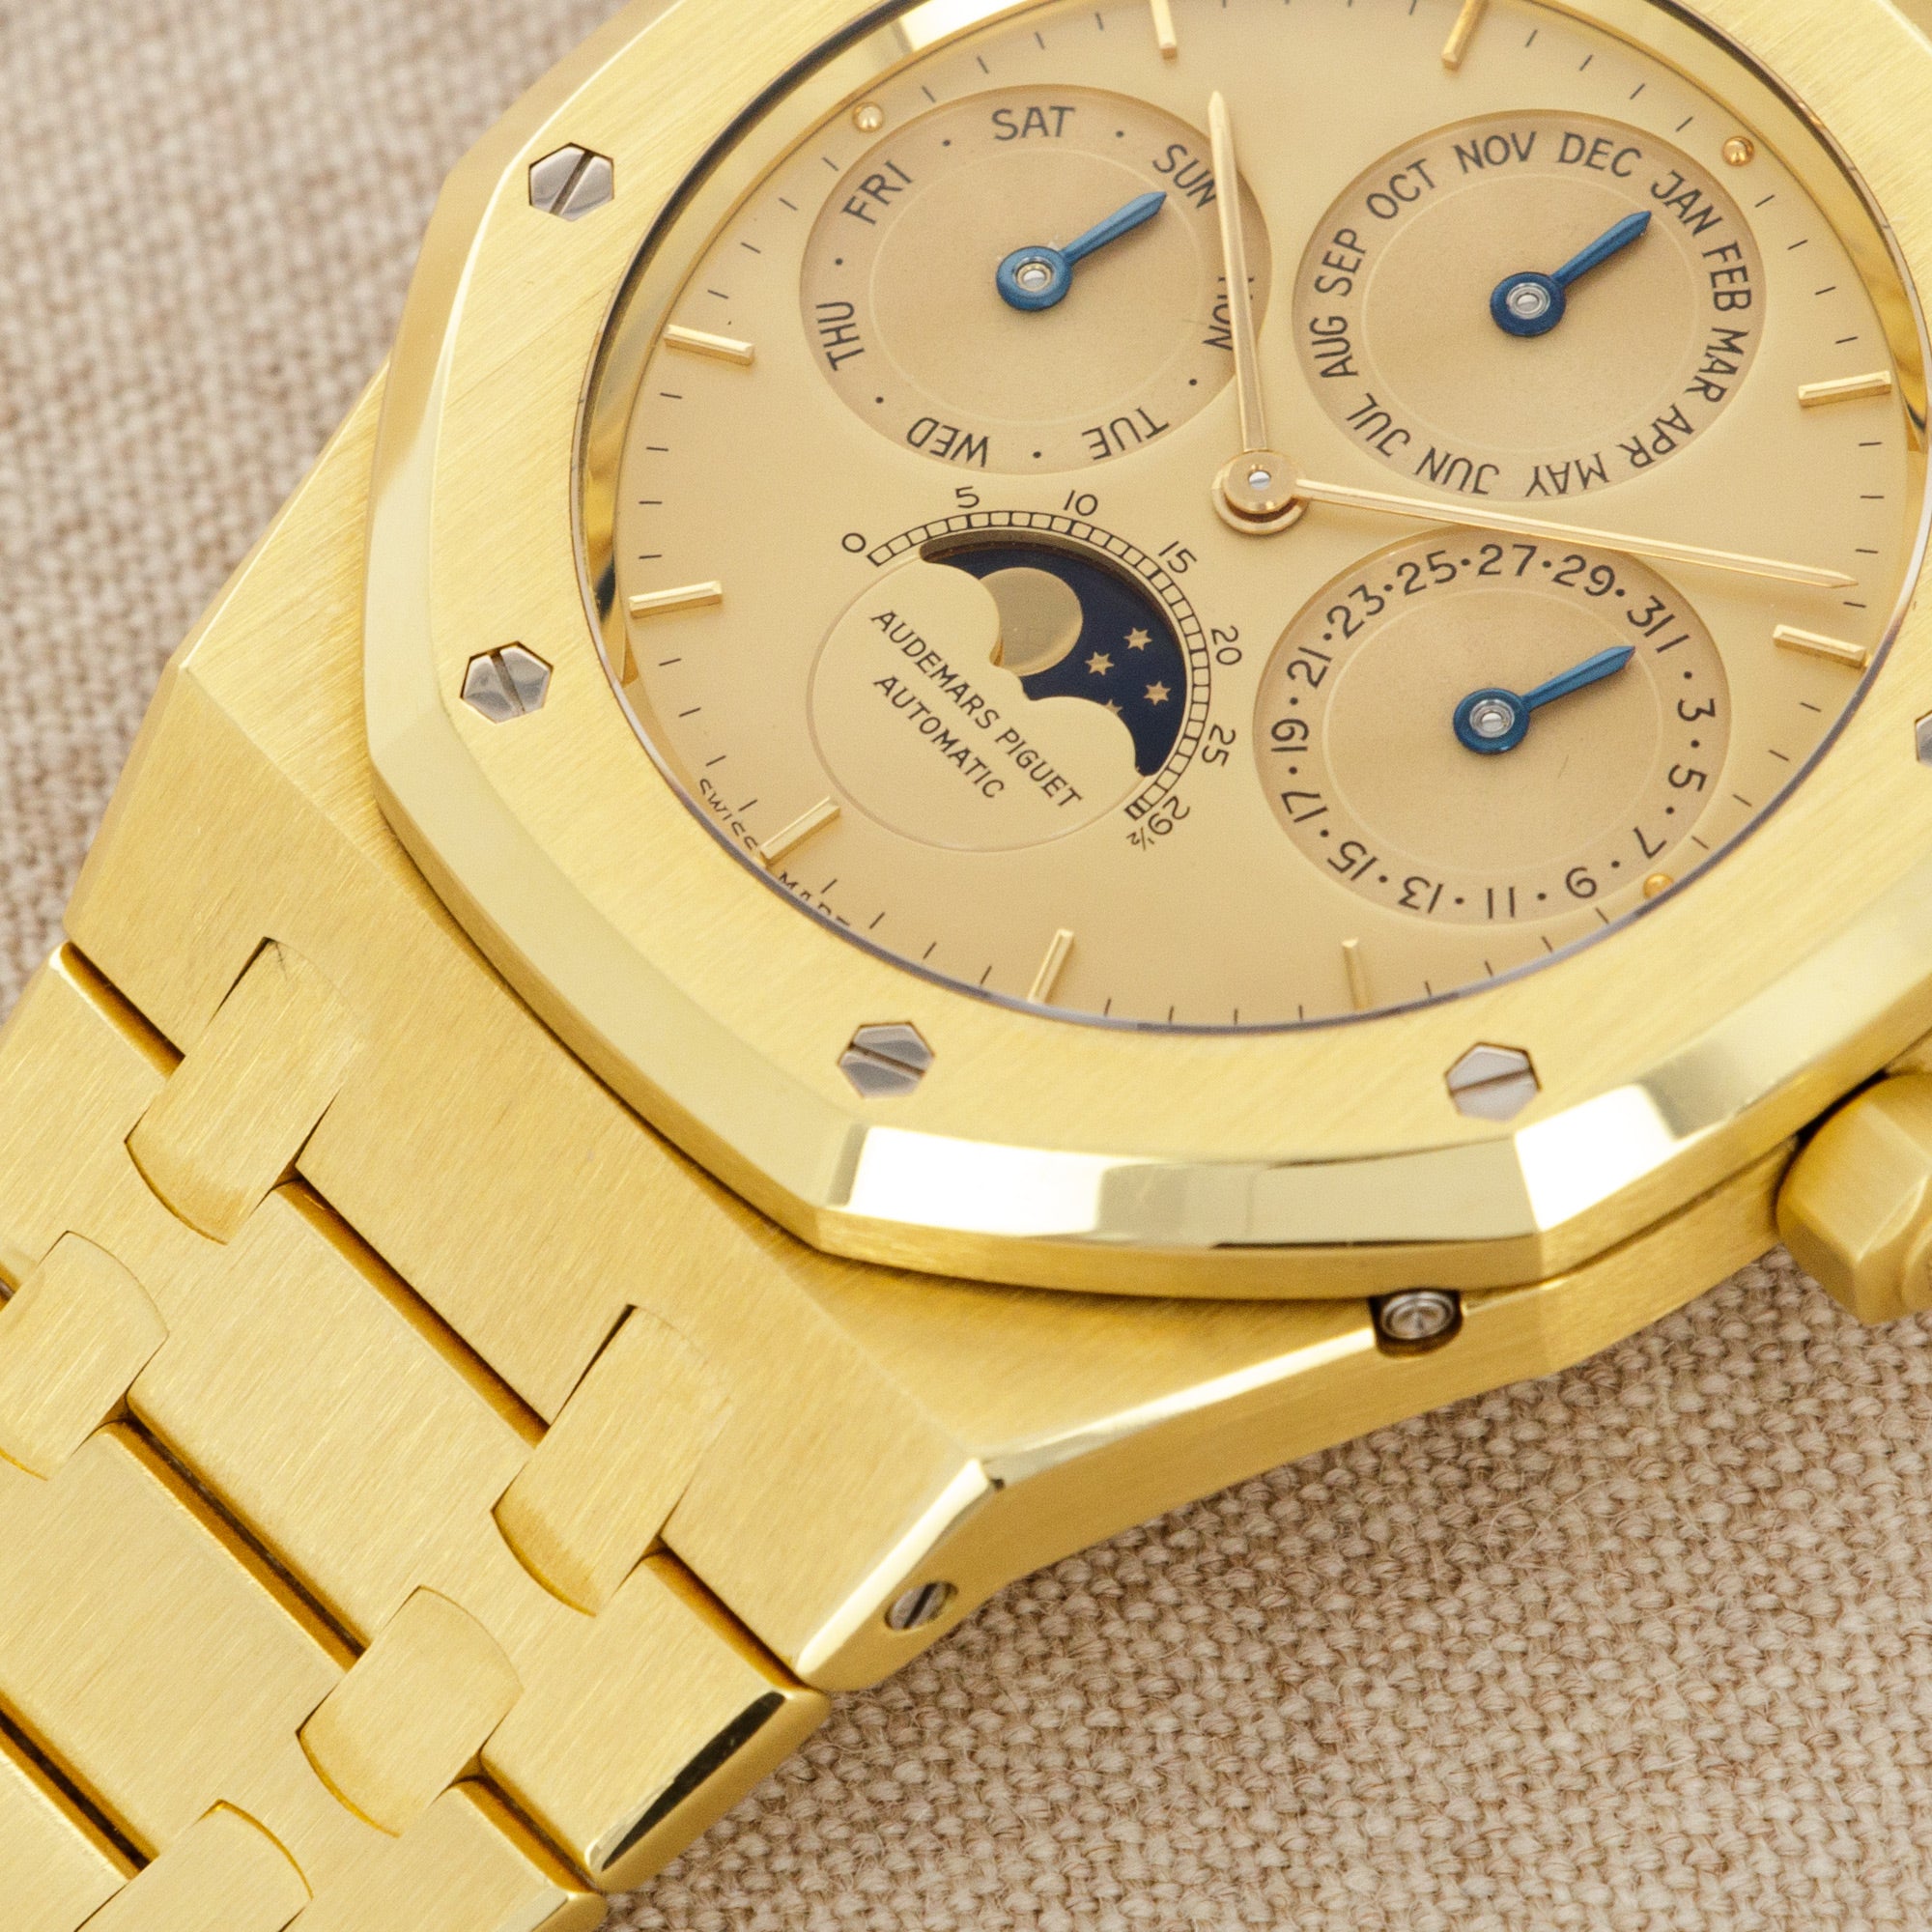 Audemars Piguet - Audemars Piguet Yellow Gold Royal Oak Perpetual Calendar Watch Ref. 25654 - The Keystone Watches